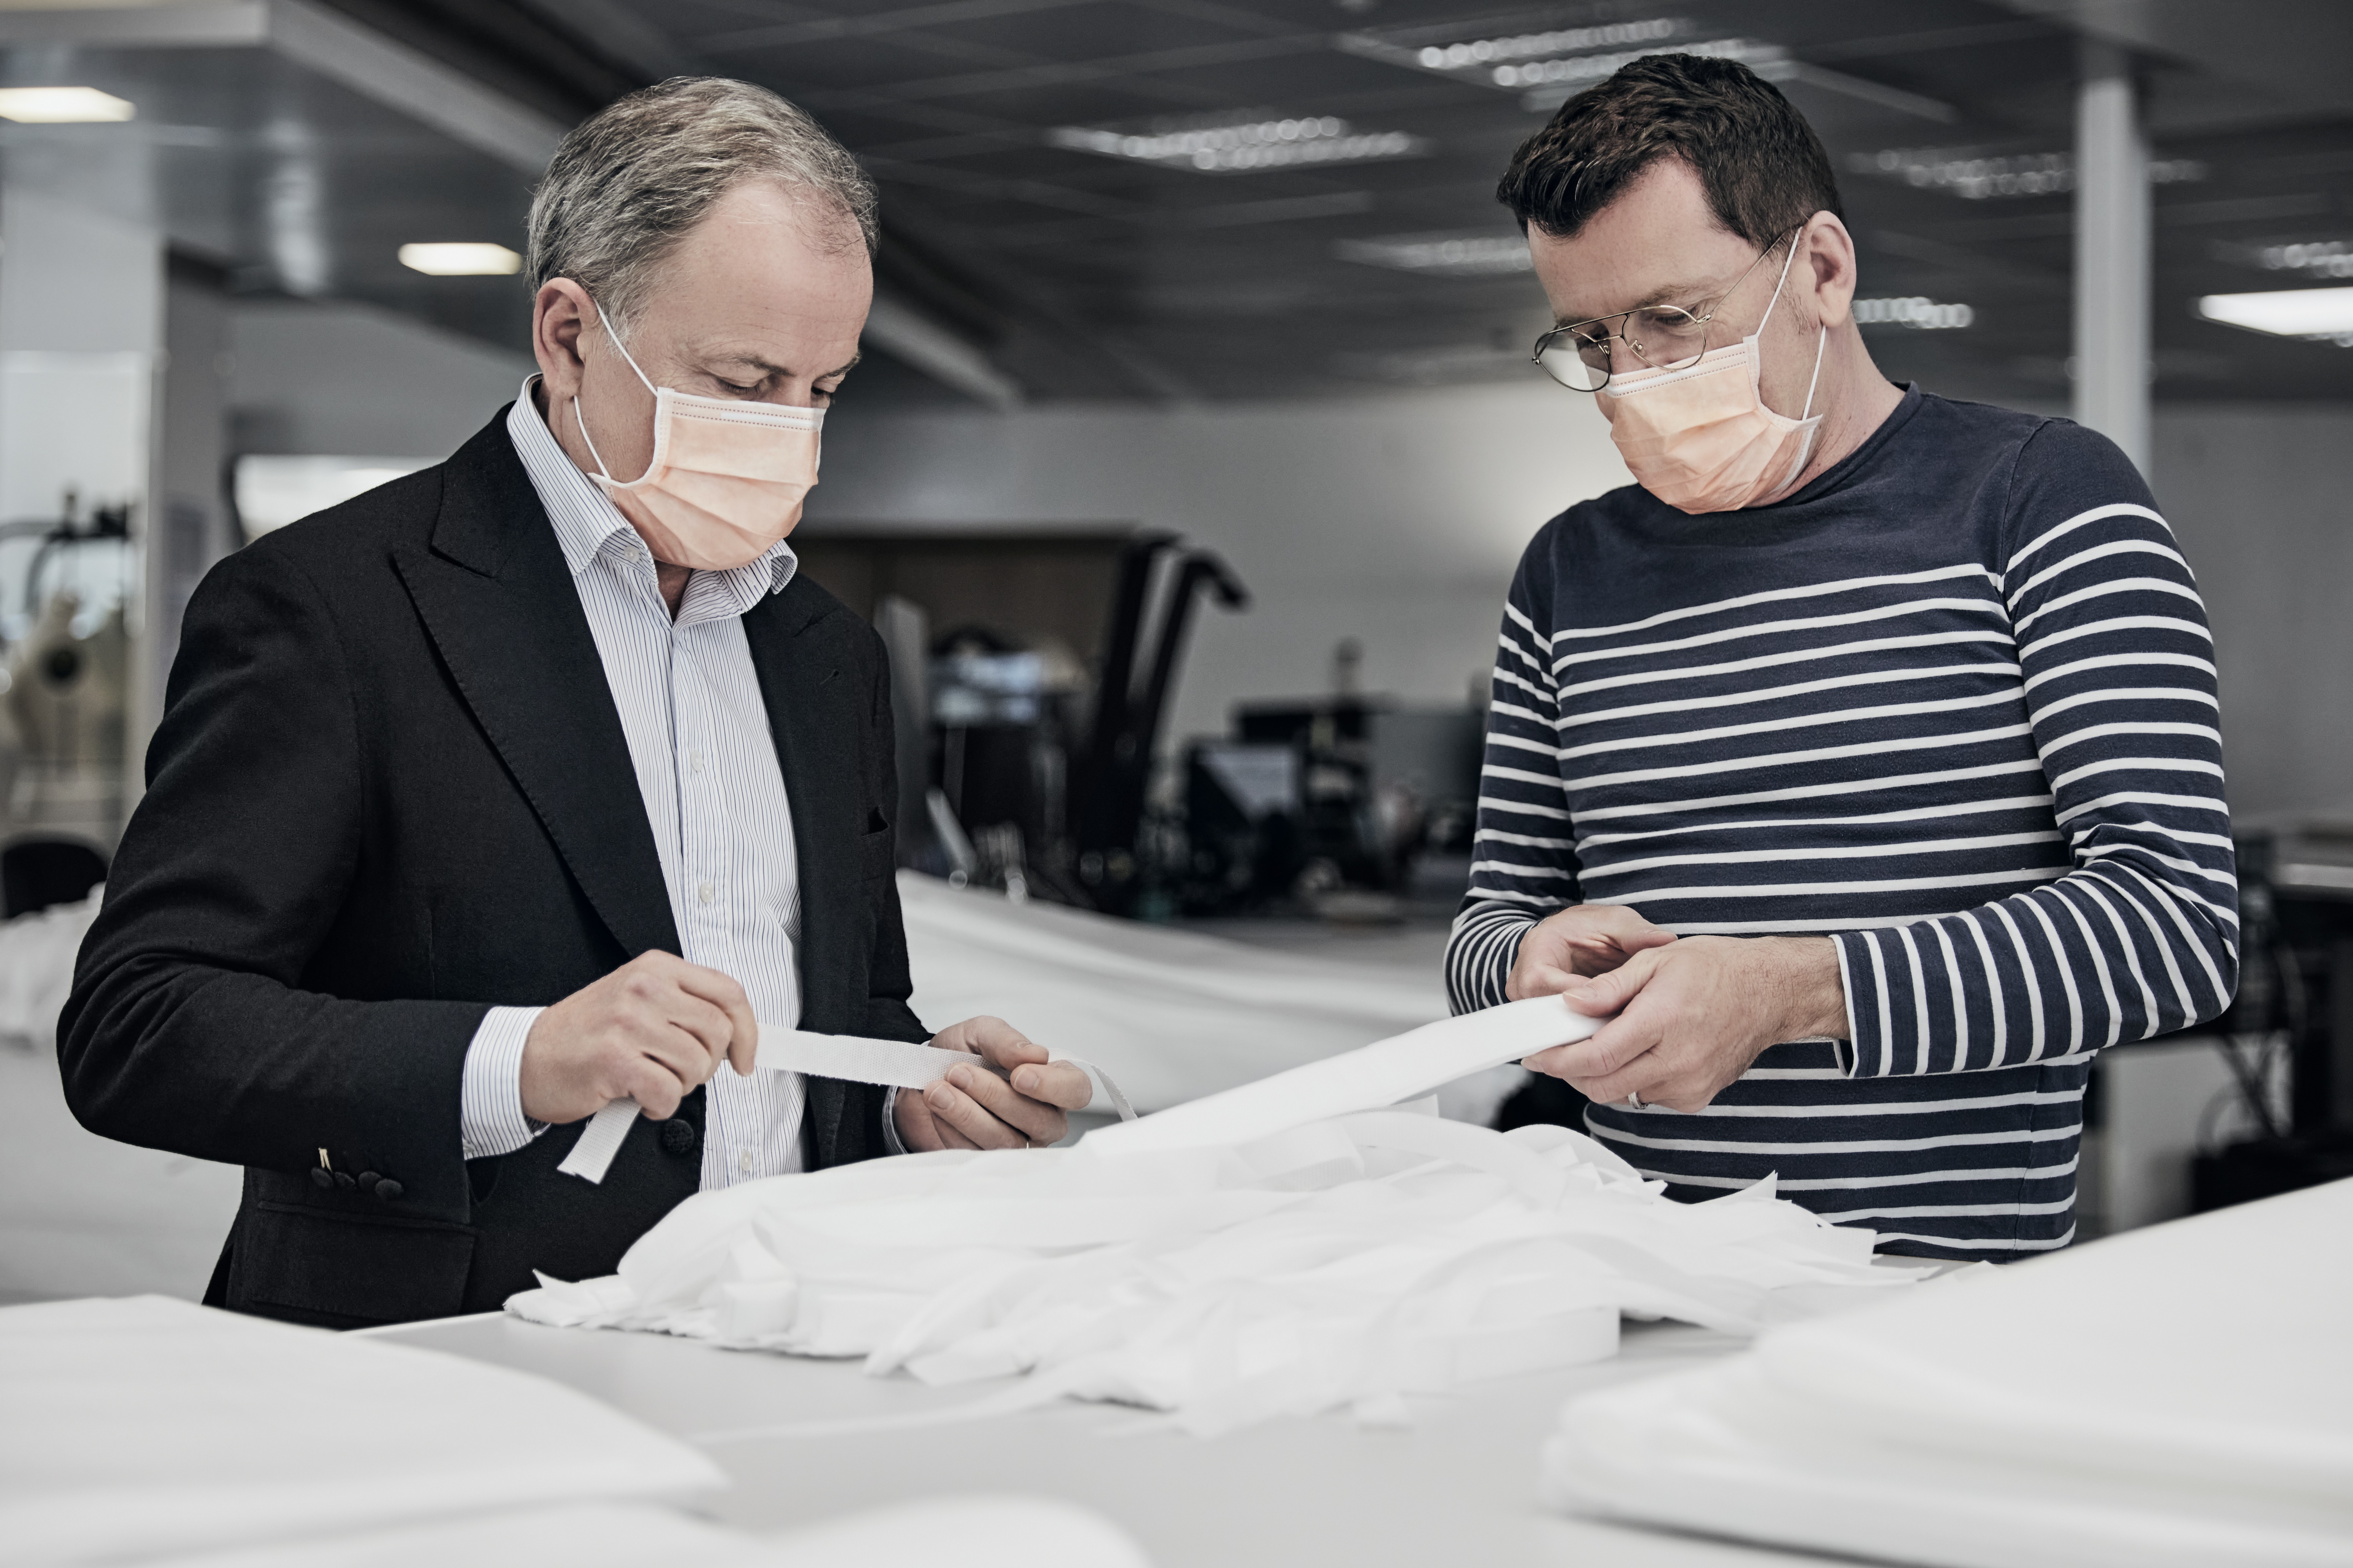 Louis Vuitton mobiliza ateliê de Paris para produzir aventais para hospitais (Foto: Piotr Stoklosa)